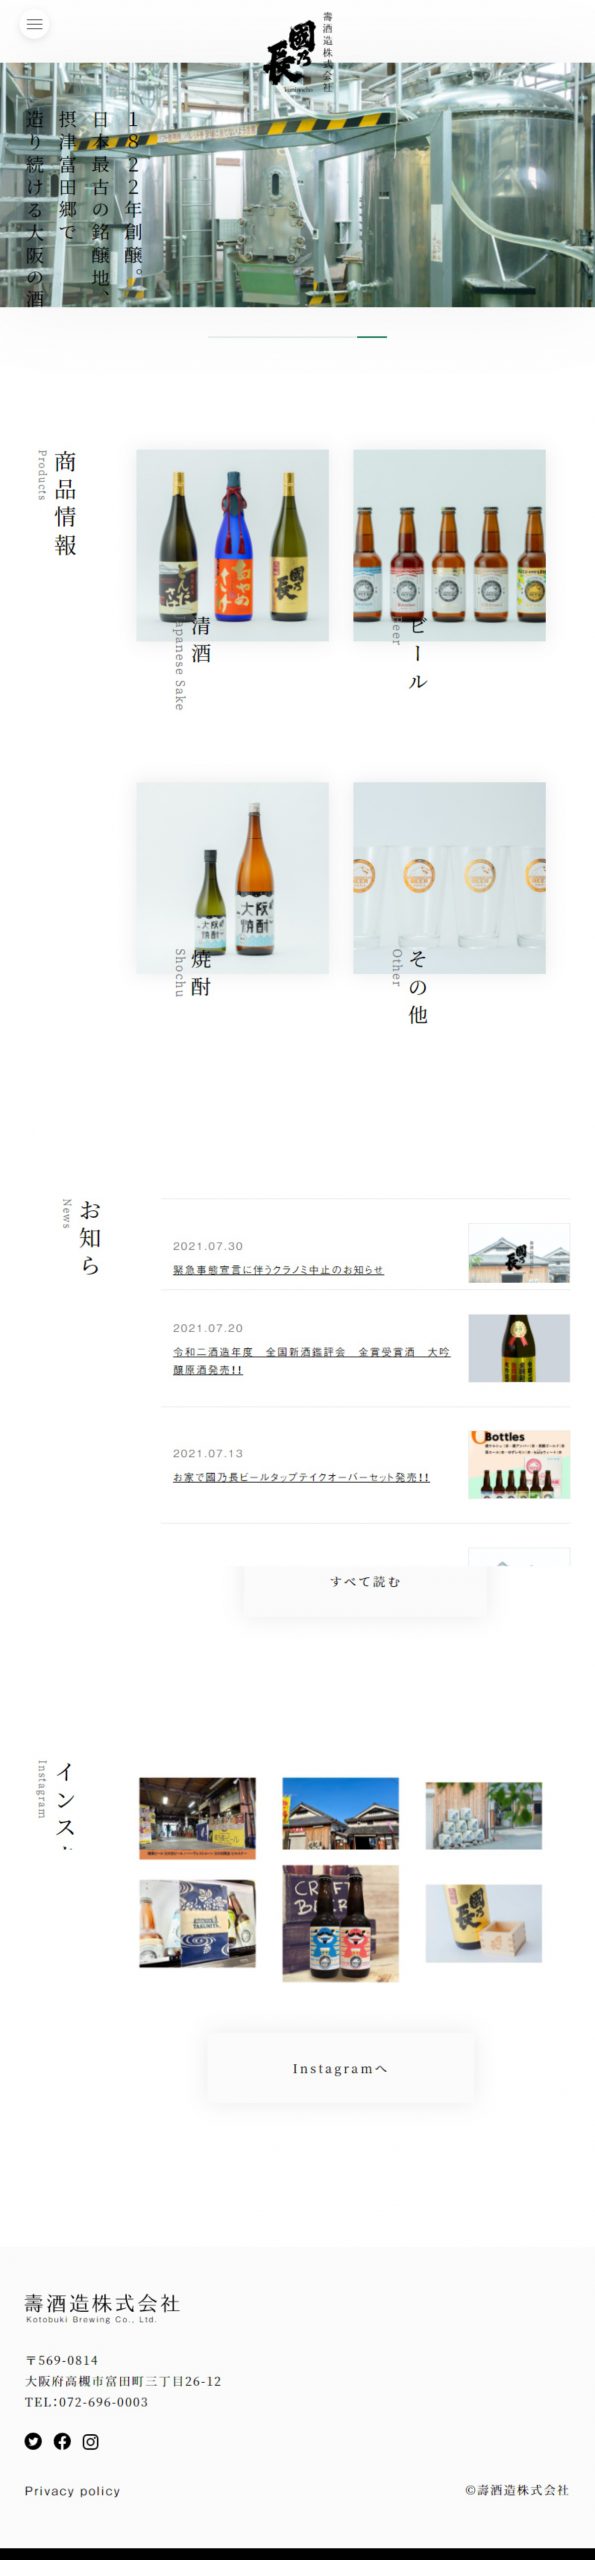 食品・飲料 コーポレートサイト制作 WEBデザイン参考ギャラリー 壽酒造株式会社 | 國乃長